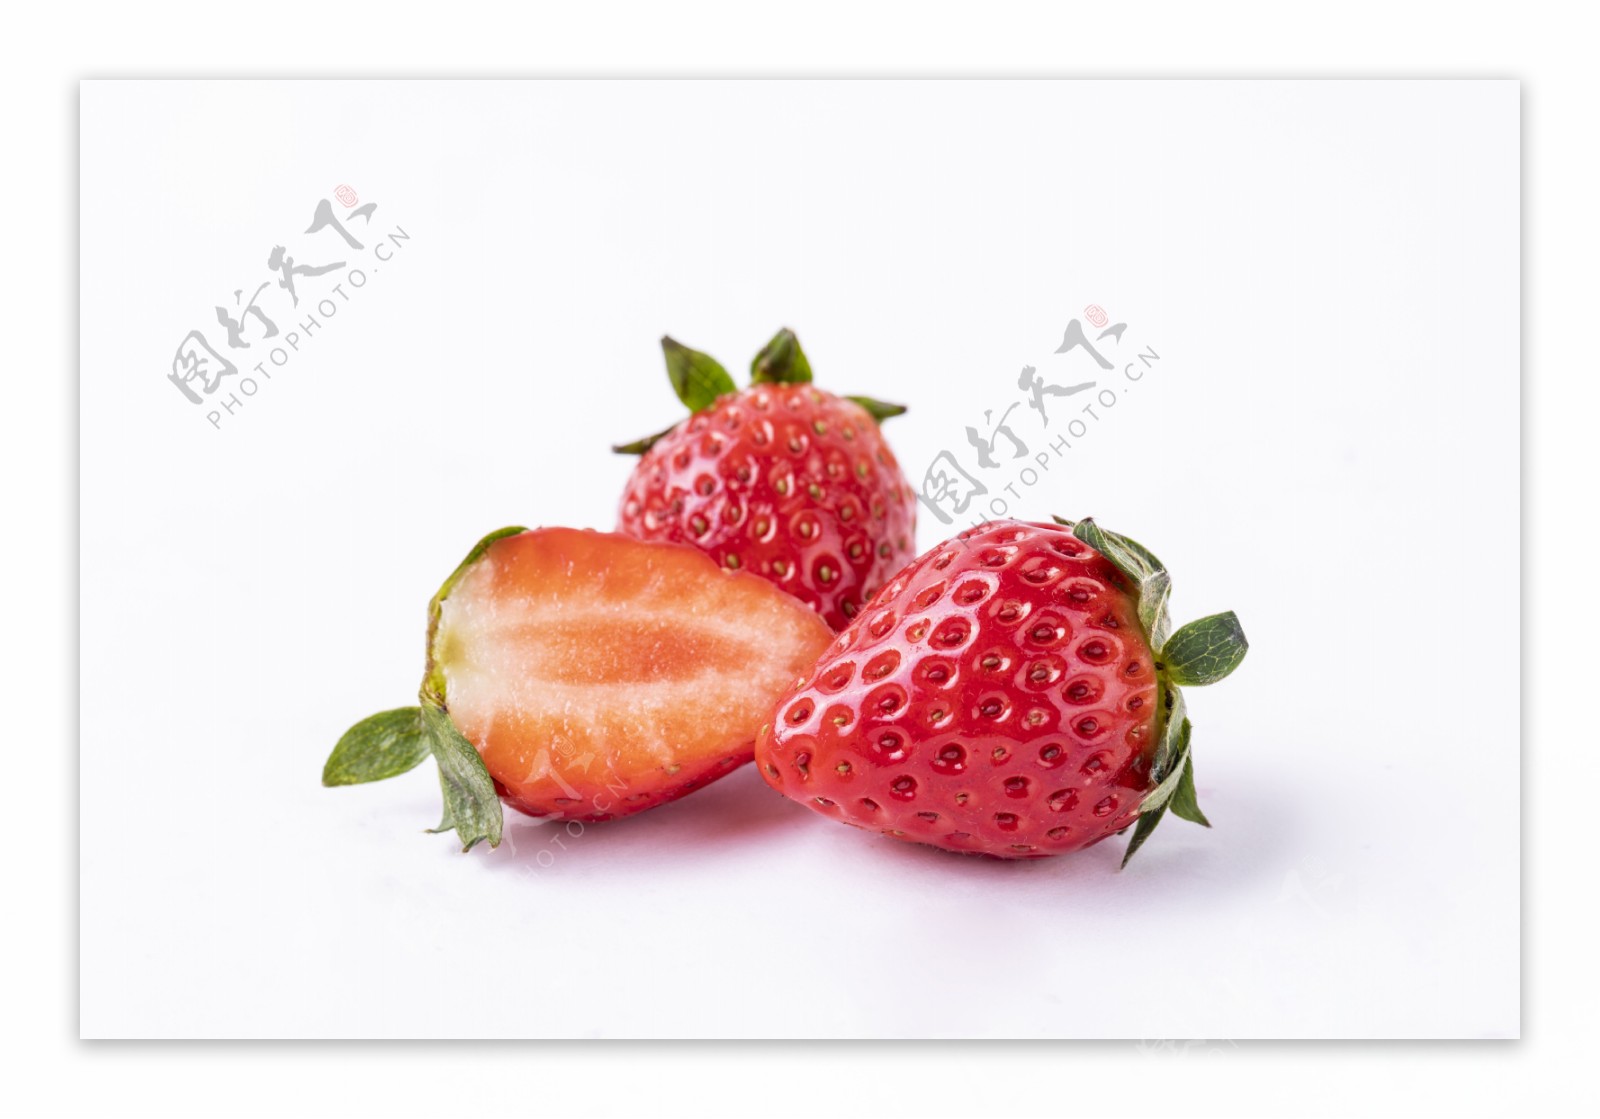 草莓白底摄影